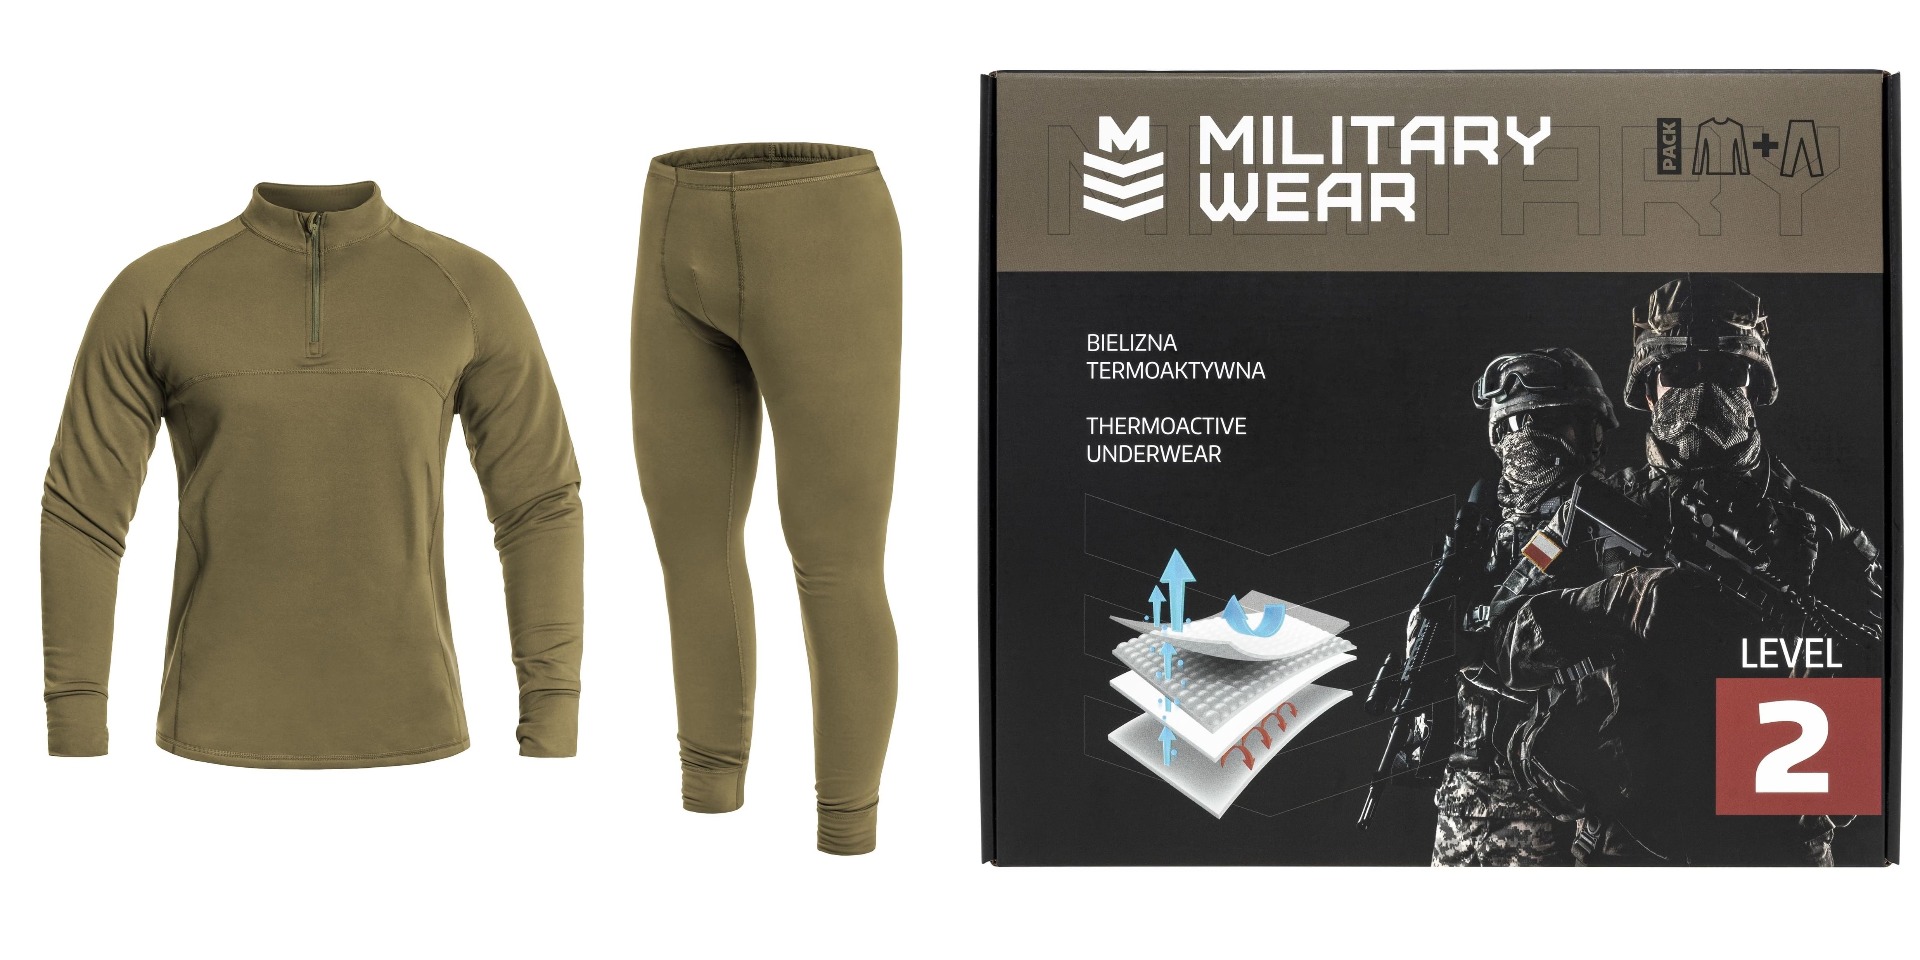 Military Wear Tactical LVL 2 Termo Aktivno Spodnje Perilo Set Olive - Vrhunsko termoaktivno spodnje perilo za športnike, vojake in lovce. Ohranja toploto in suhost v vseh pogojih.